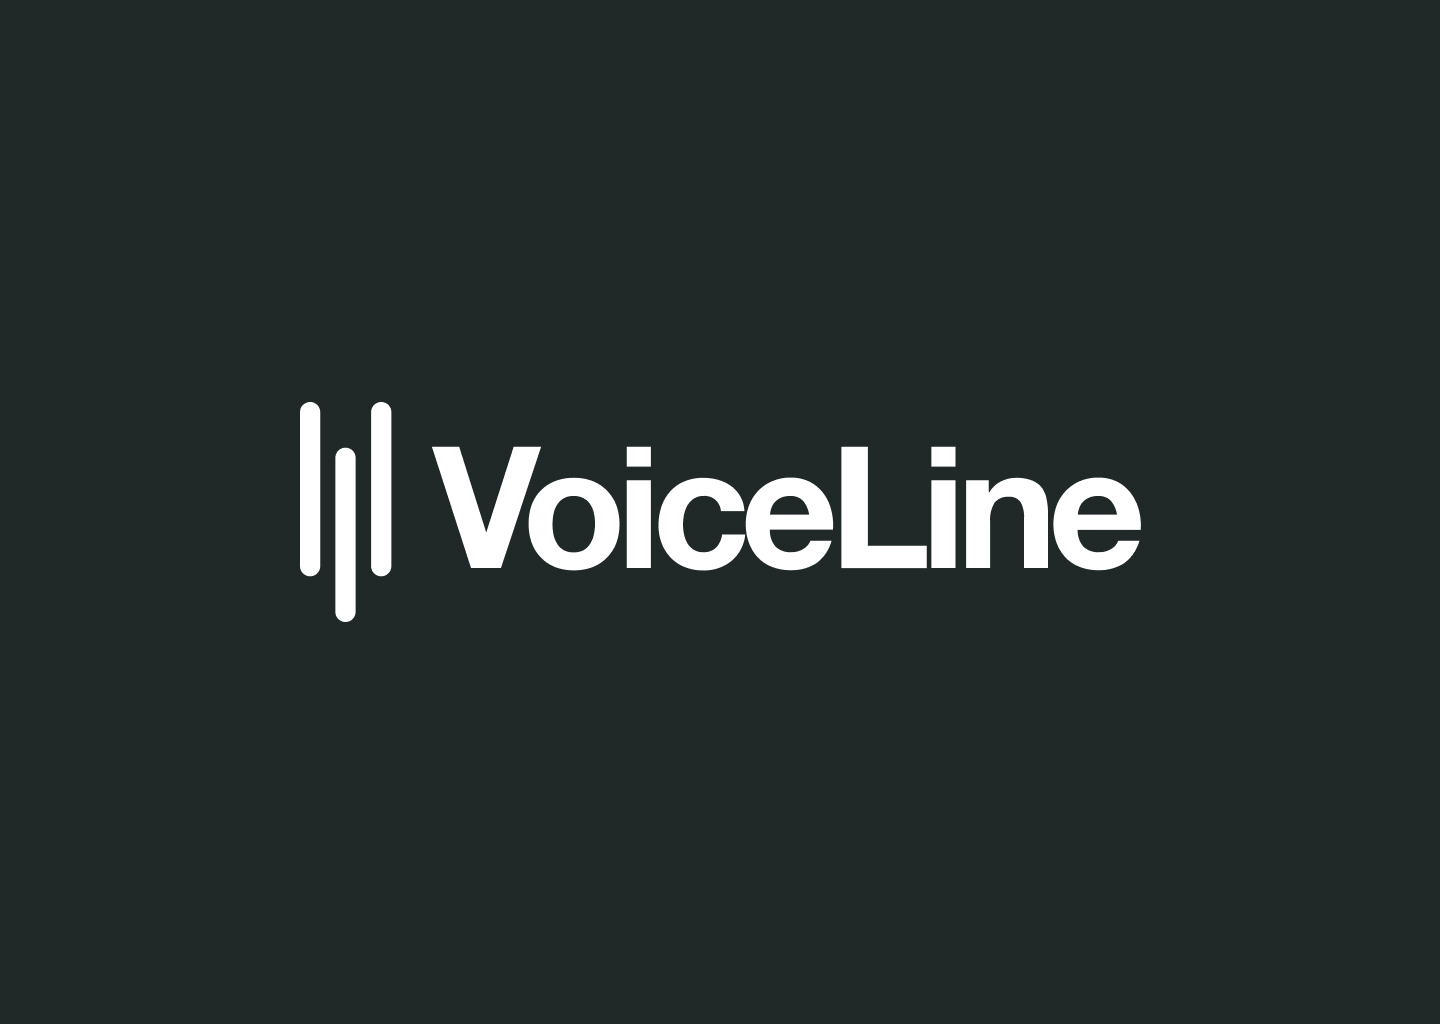 VoiceLine